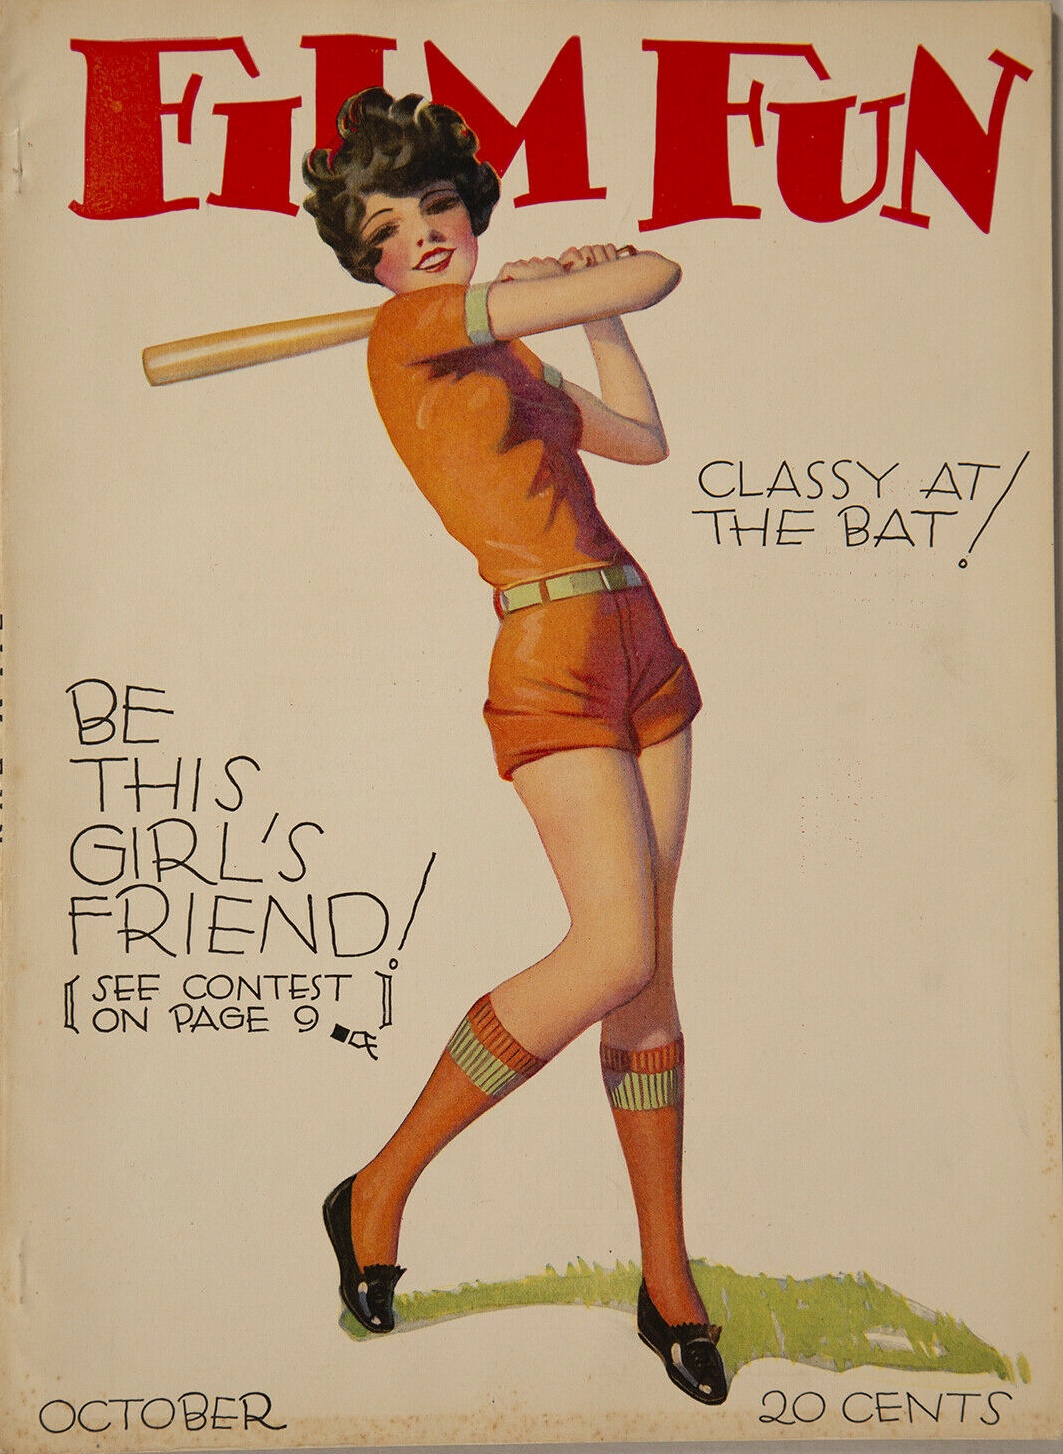 October 1928 Film Fun Magazine